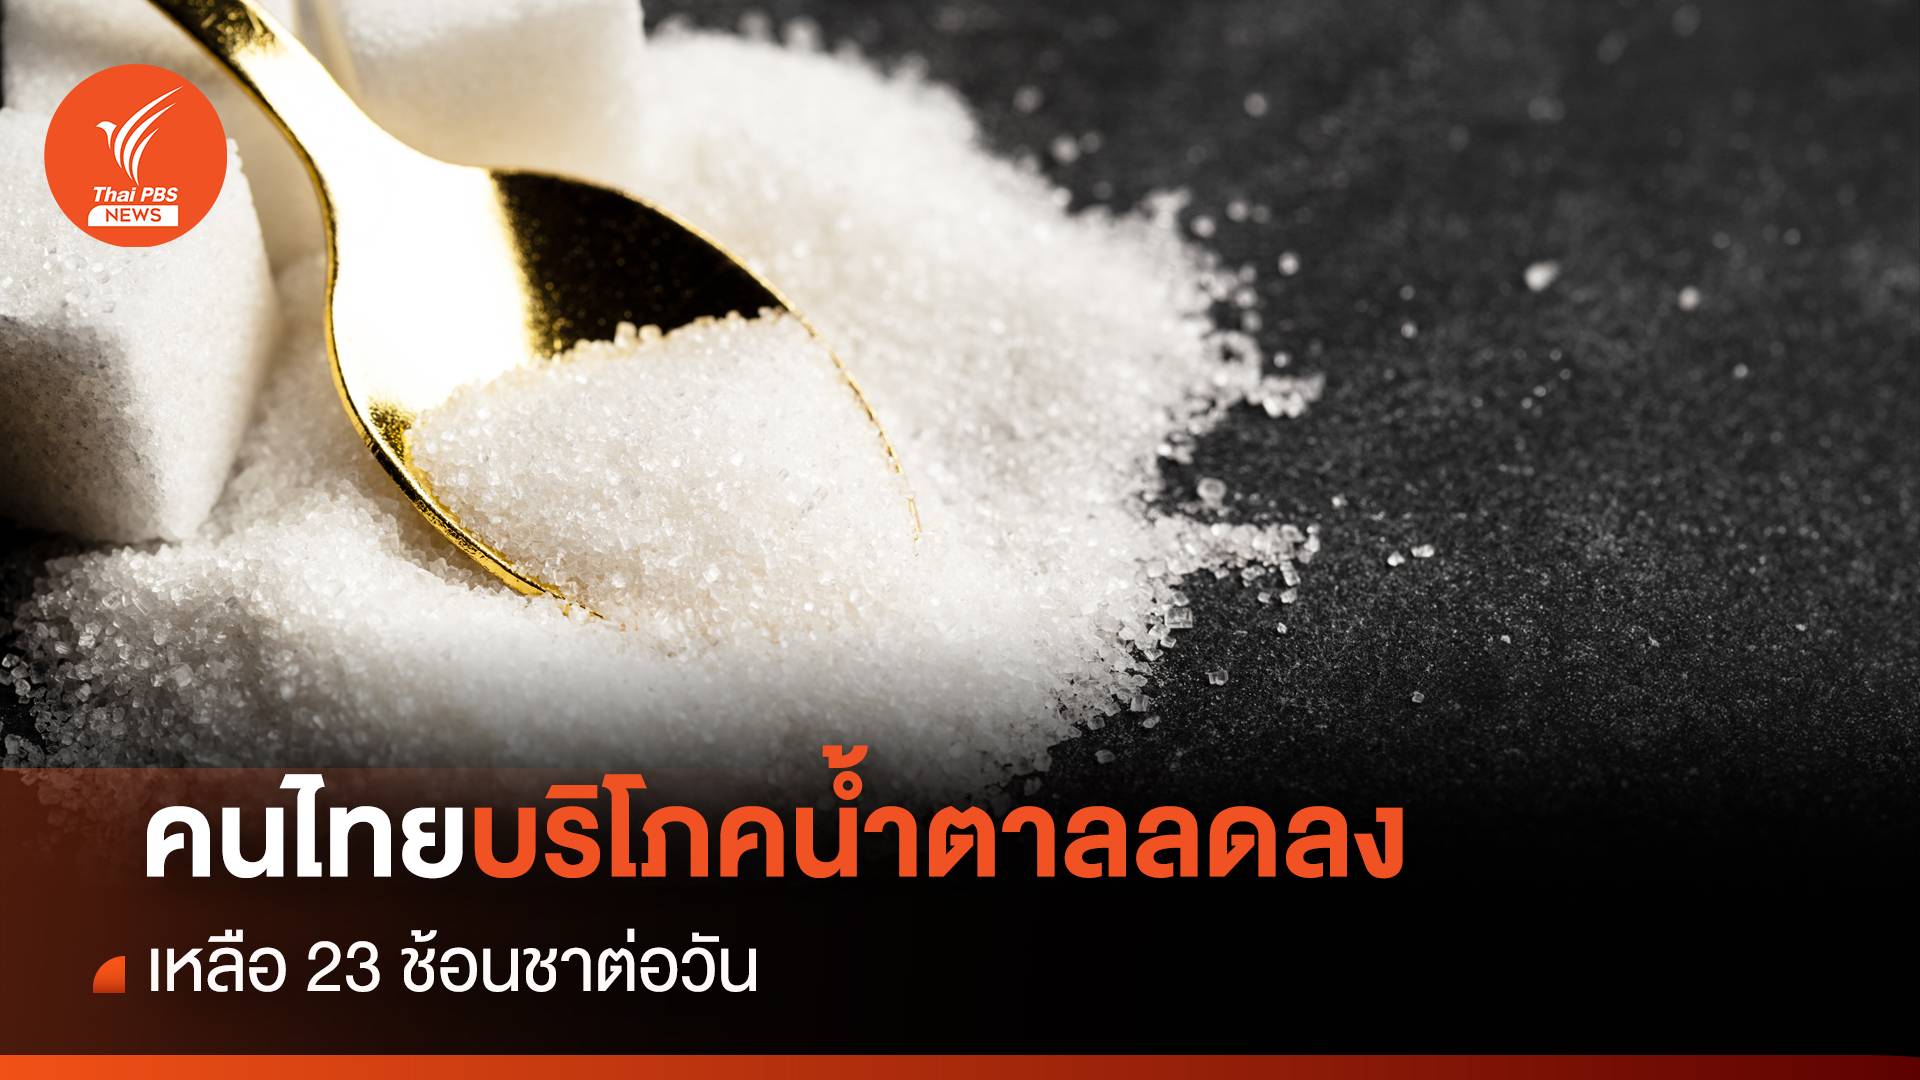 คนไทยบริโภคน้ำตาลลดลง เหลือ 23 ช้อนชาต่อวัน